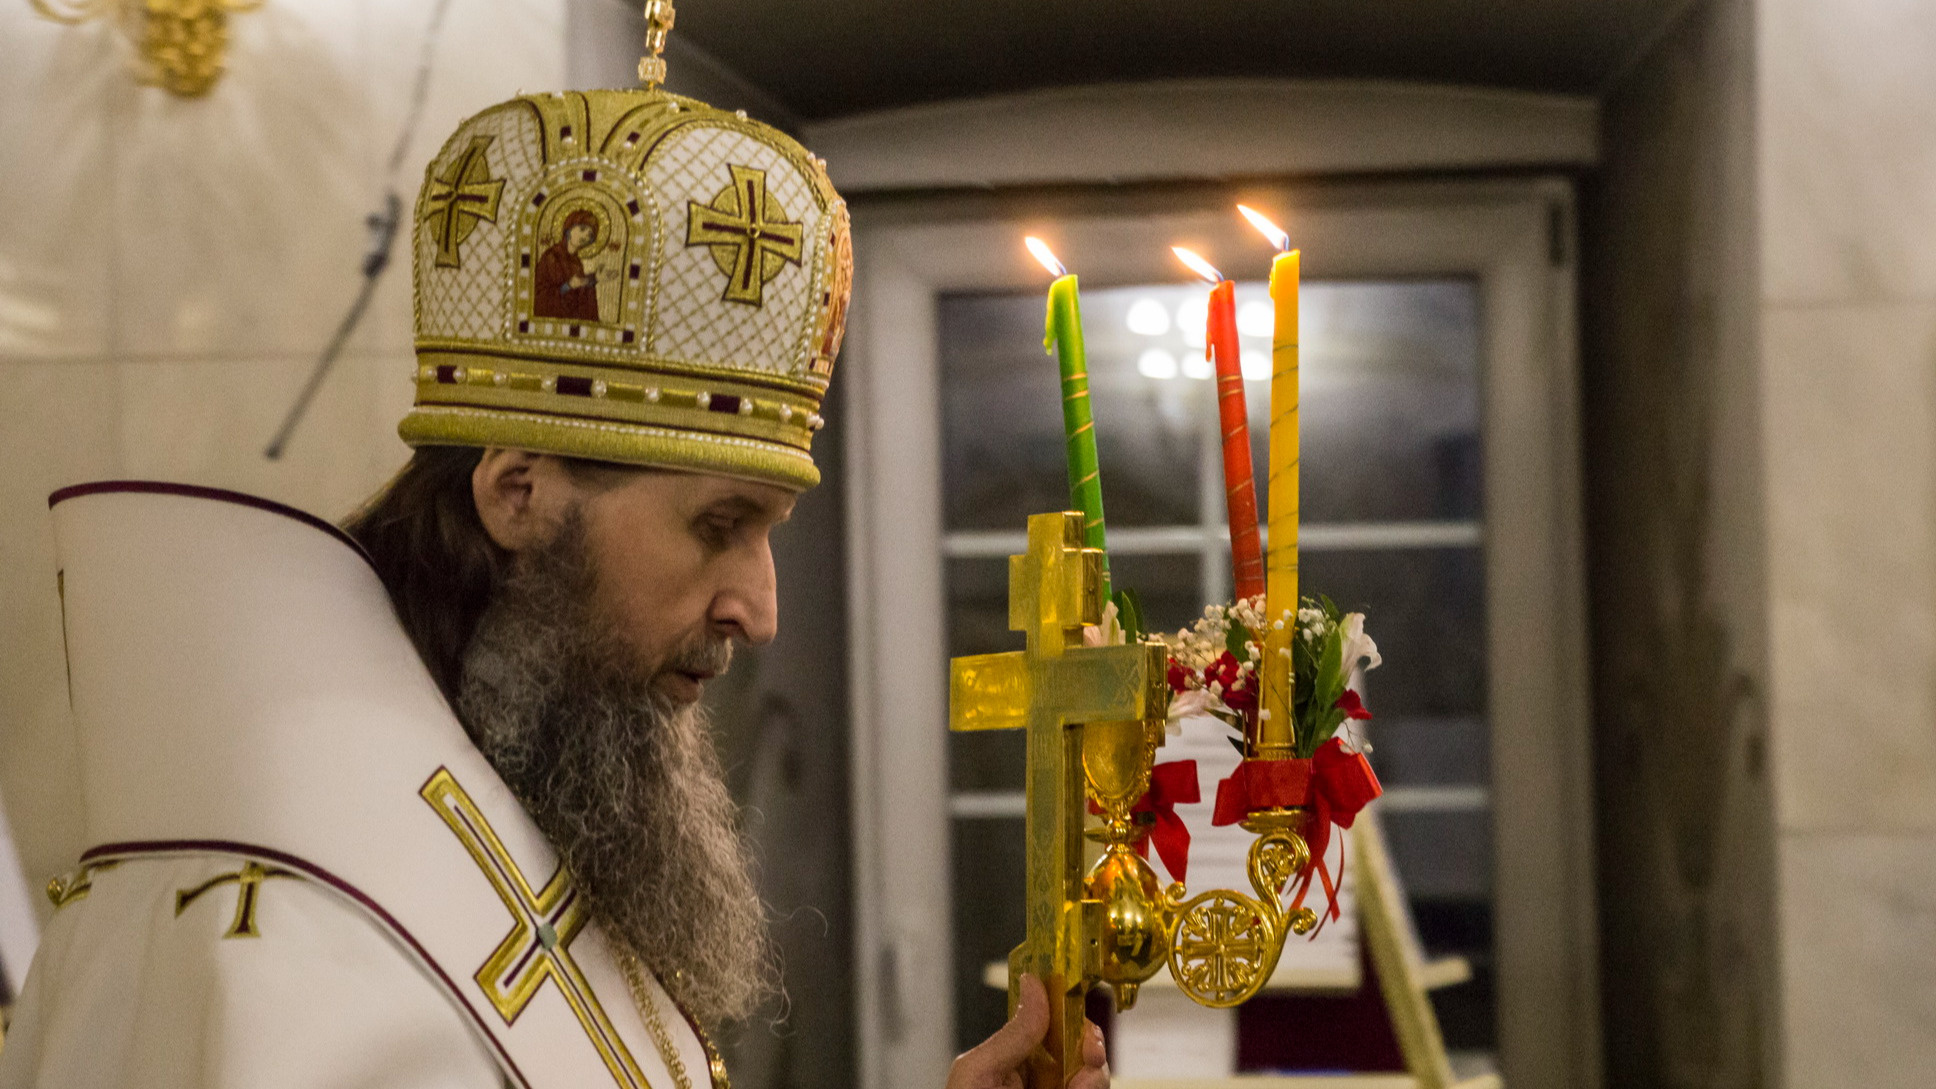 «Это в первую очередь средство контроля»: экс-глава Архангельской епархии критикует QR-коды